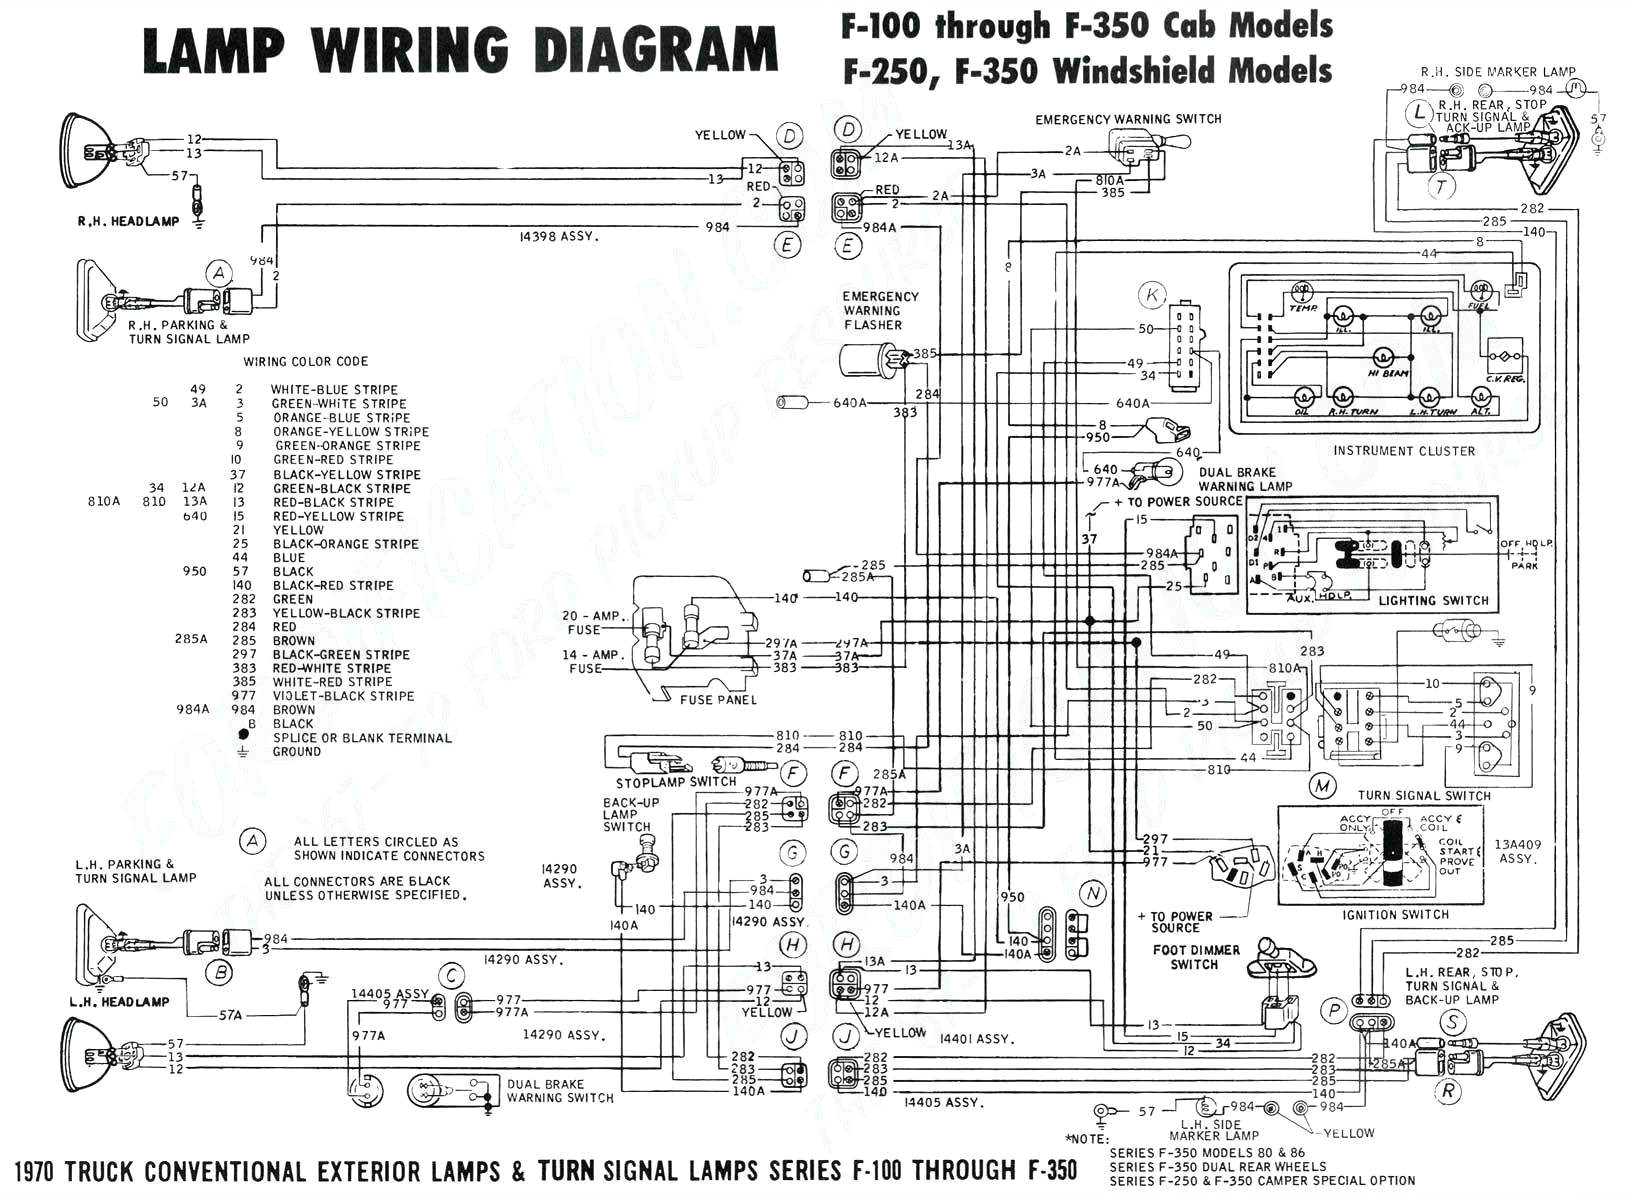 7 pole trailer plug wiring diagram